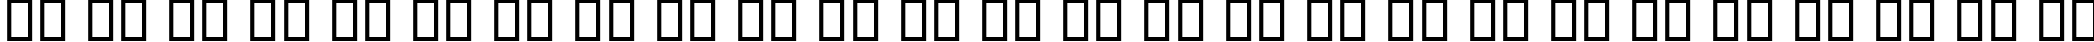 Пример написания английского алфавита шрифтом B Kamran Bold